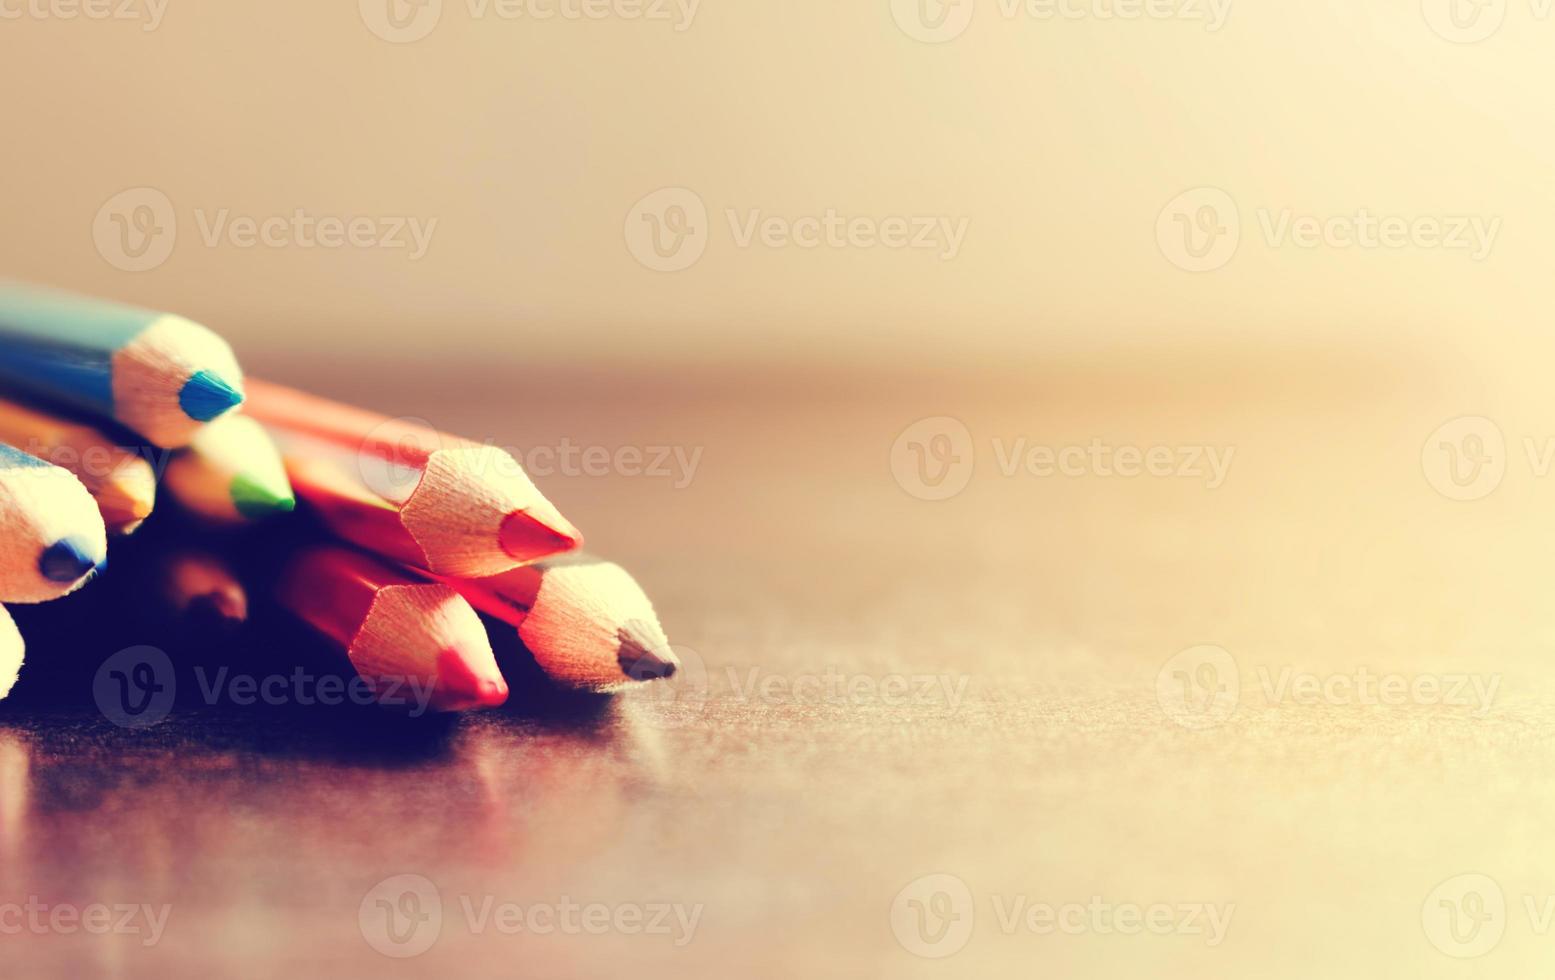 enfoque suave de la pila de lápices de colores en el escritorio. foto